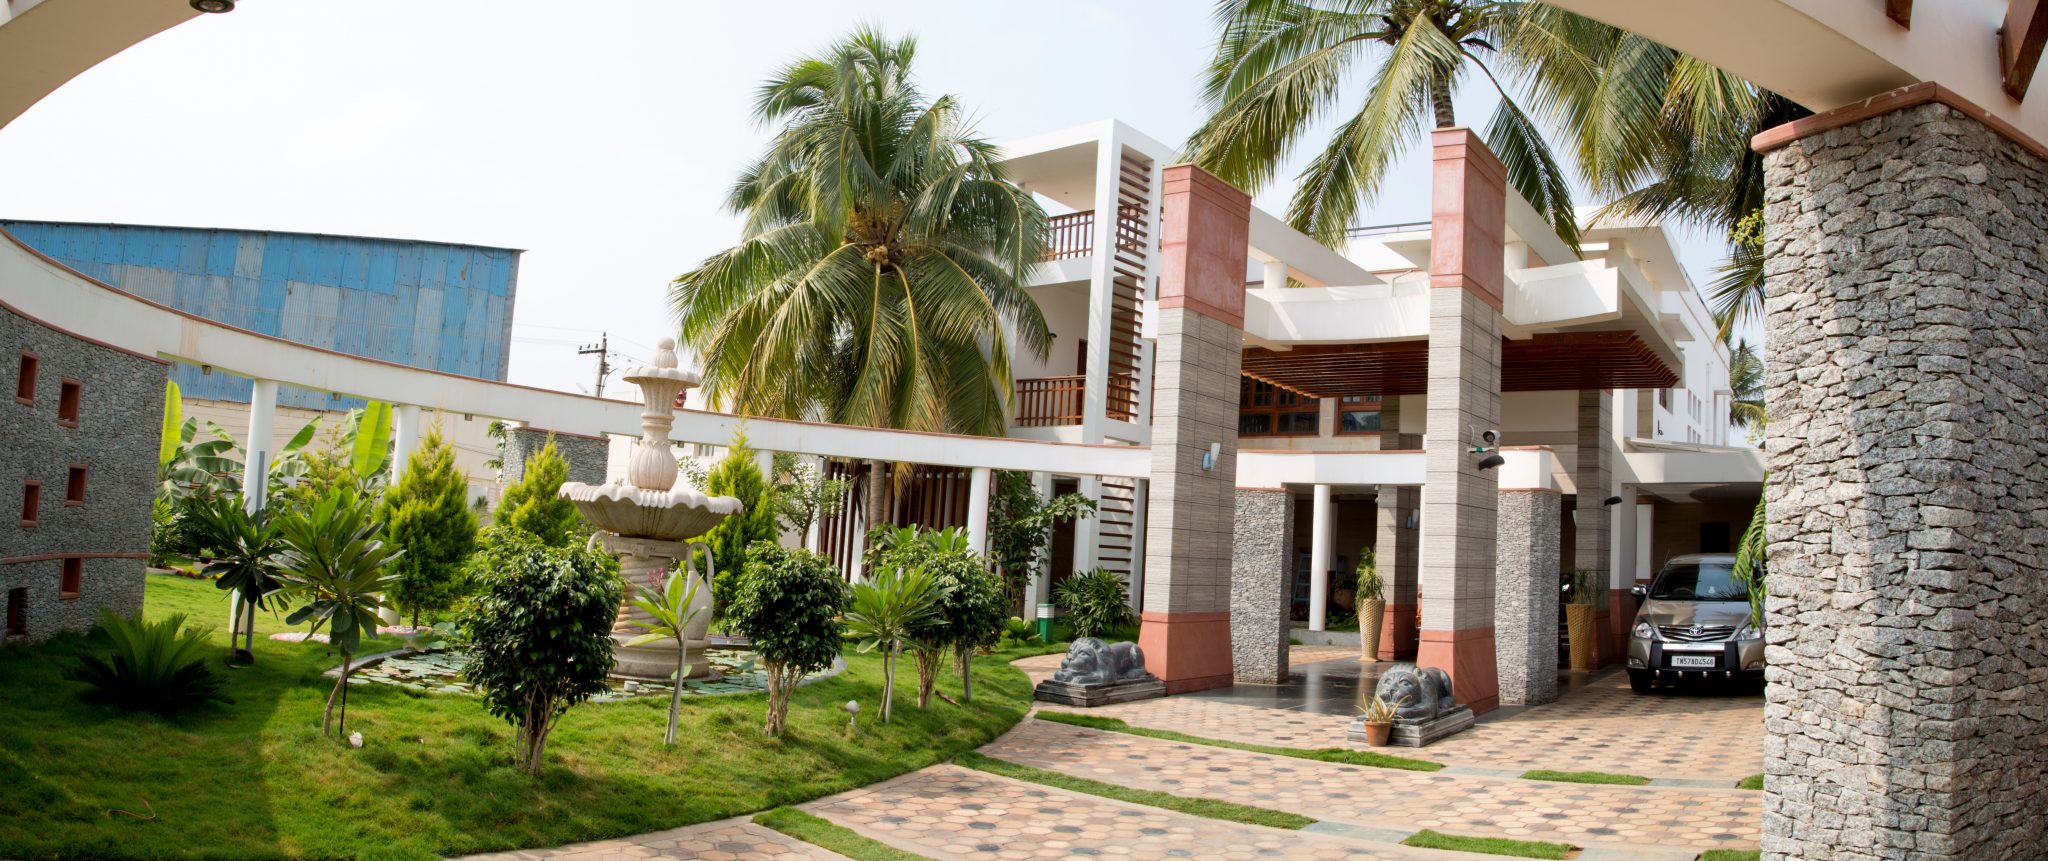 Rathinam residence